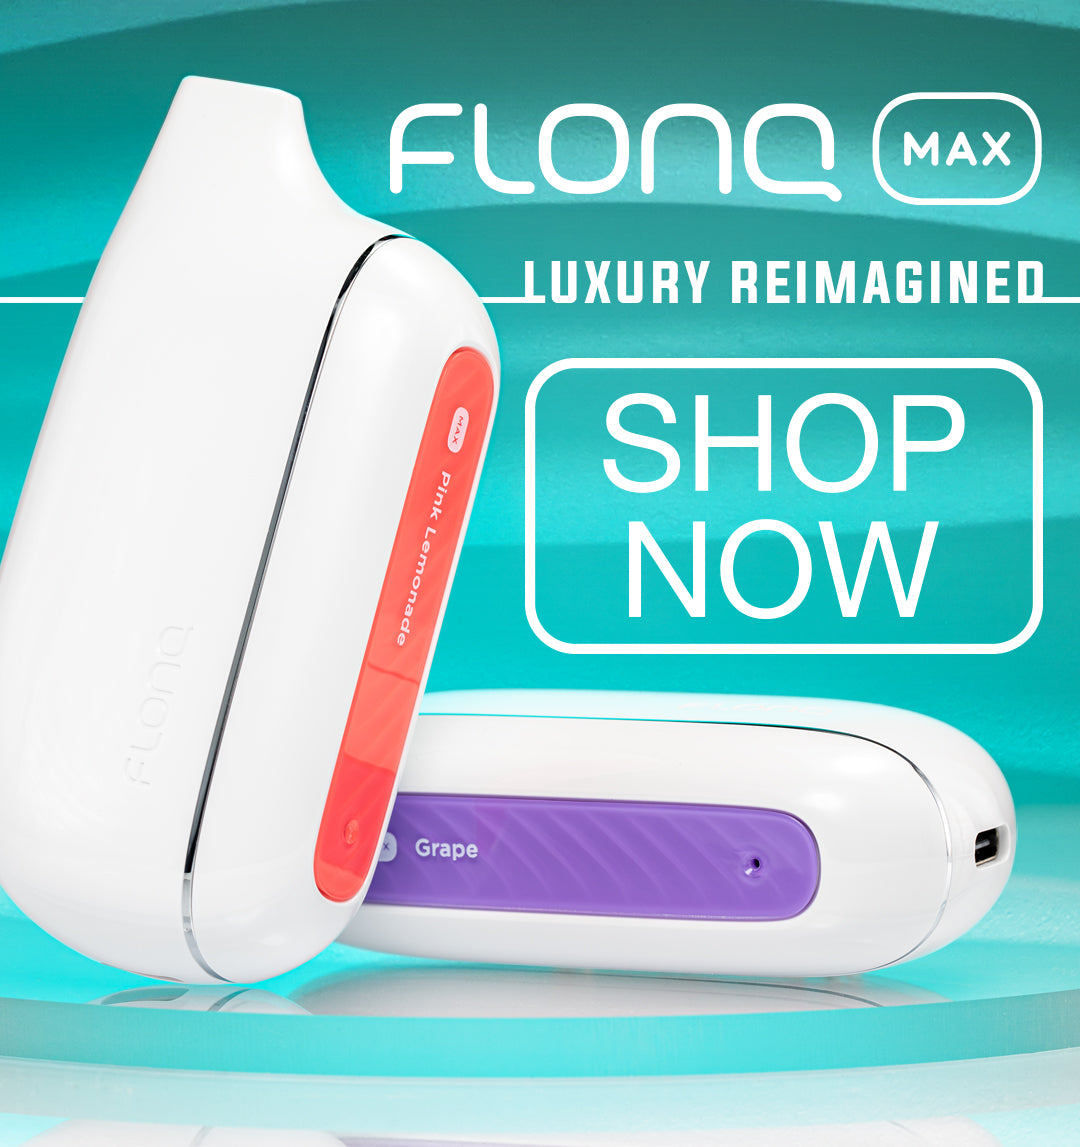 Flonq Max Shop Now